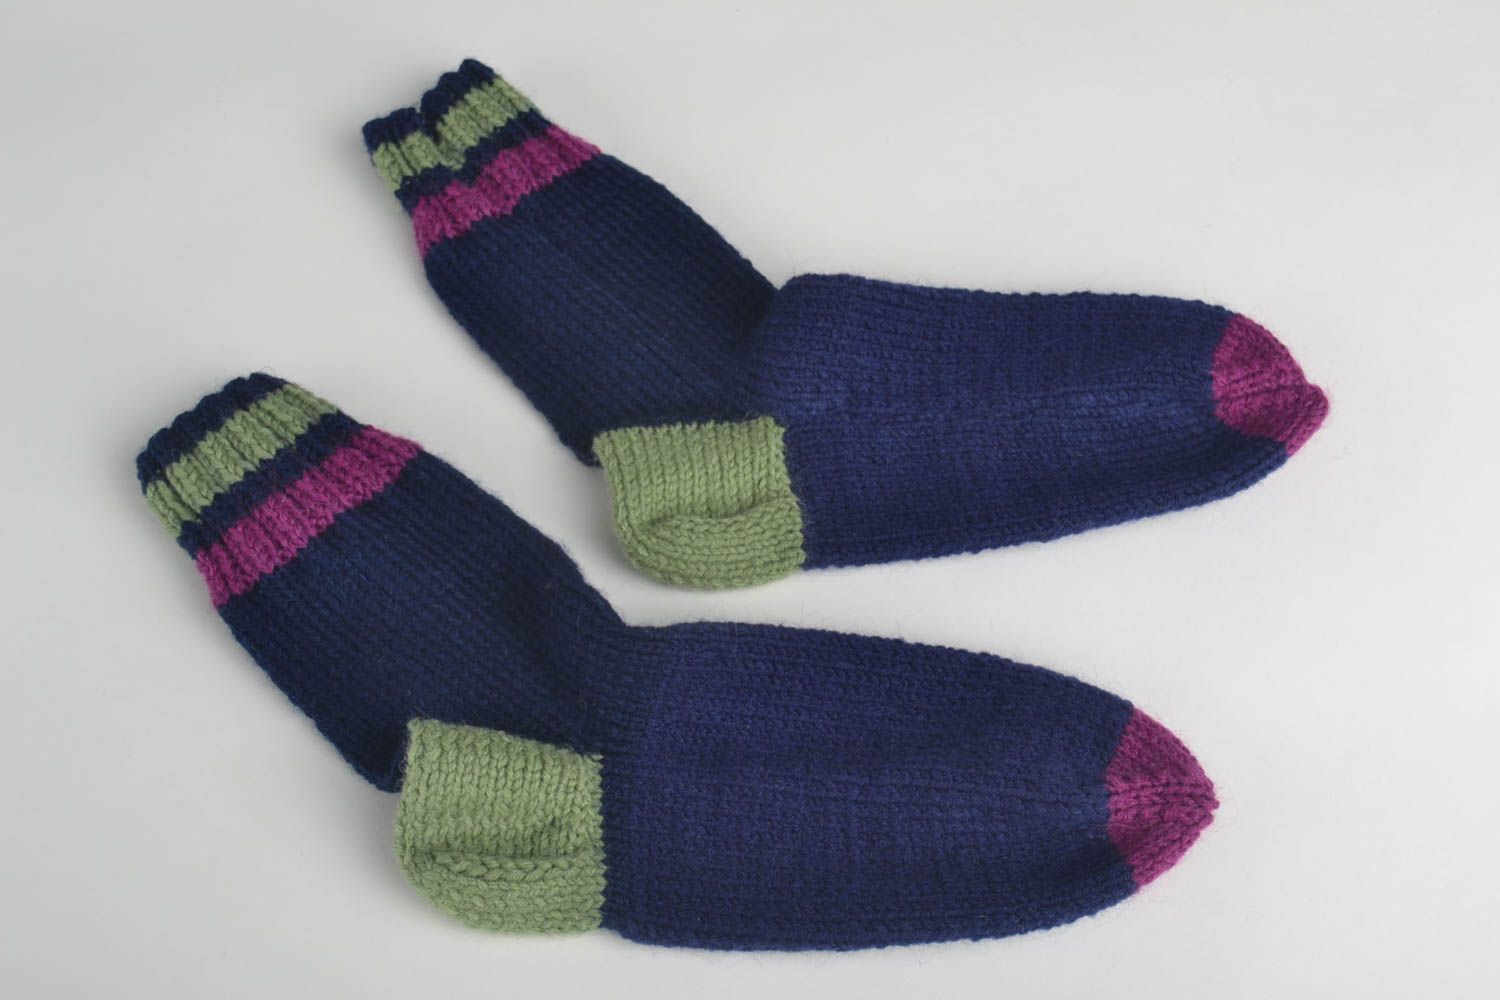 Unusual handmade wool socks knitting socks cool socks for women gifts for her photo 4